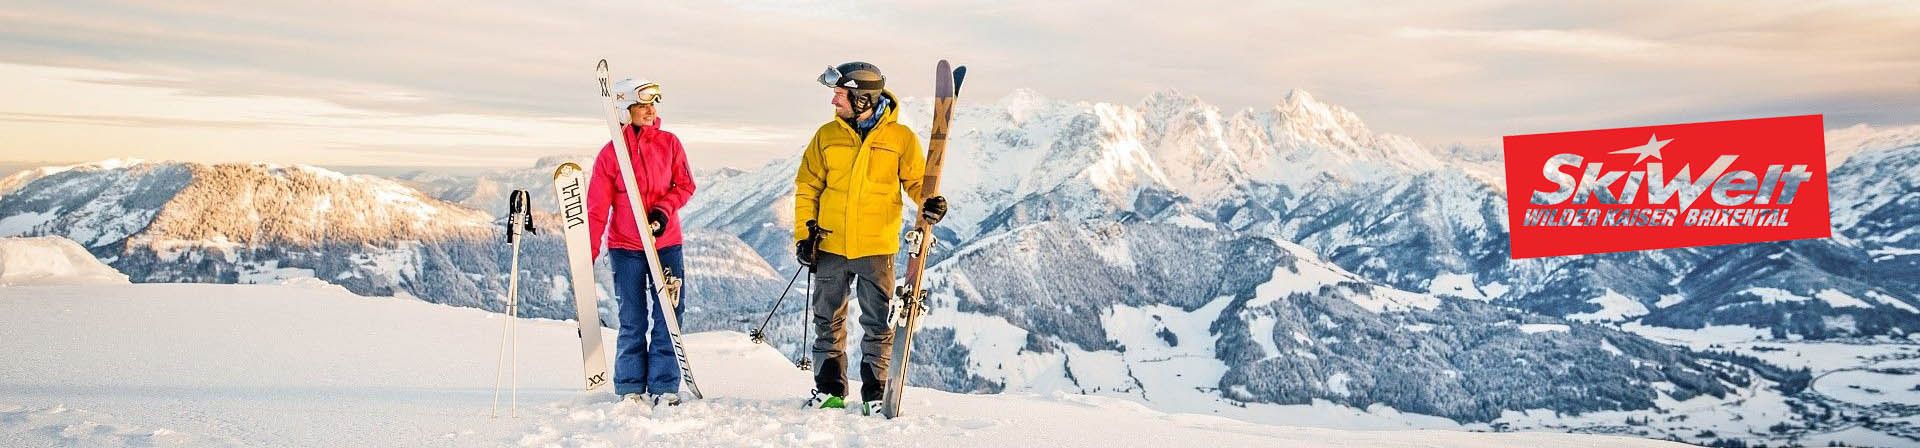 hd-skifahrer-vor-winter-bergkulisse-in-den-kitzbueheler-alpen-mirjageheye5-brixental.jpg